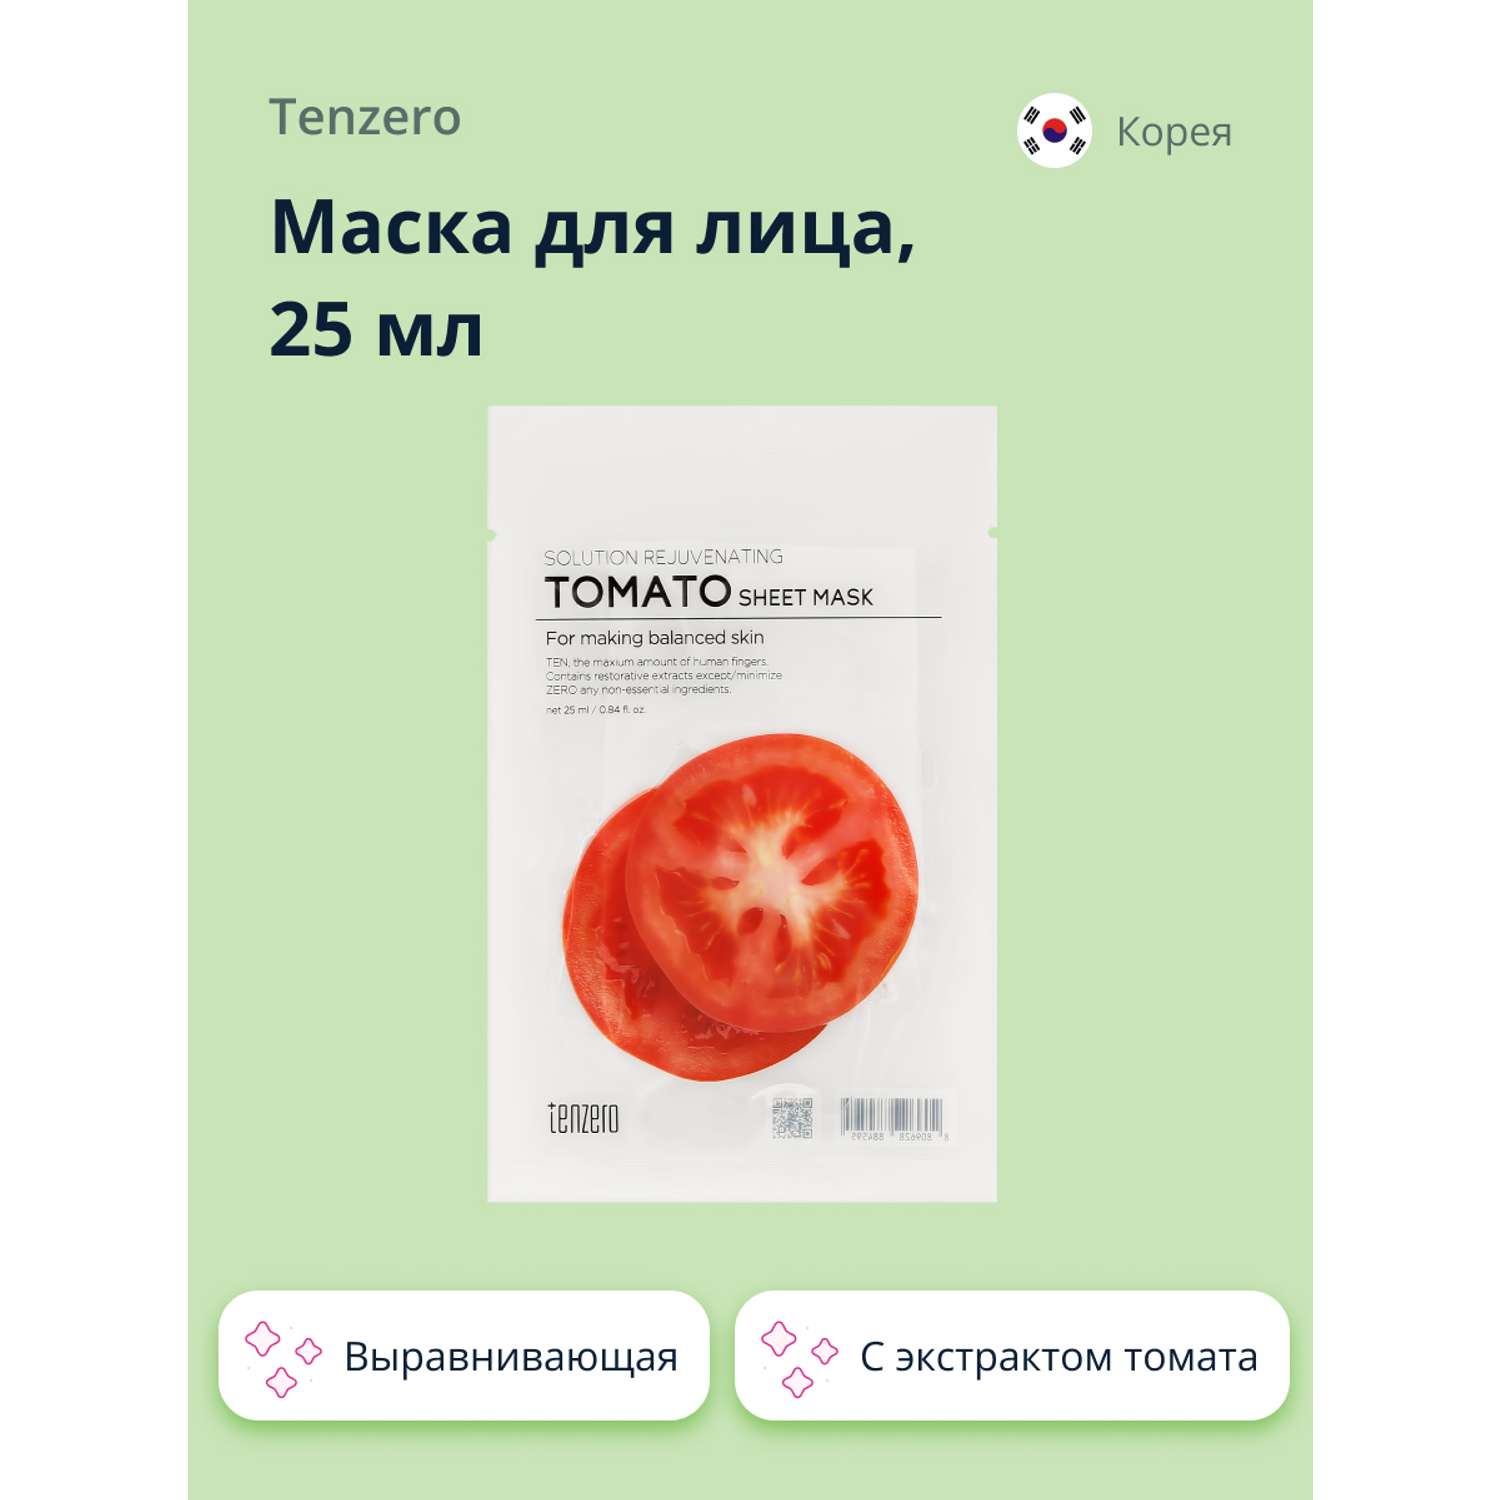 Маска тканевая Tenzero с экстрактом томата выравнивающая 25 мл - фото 1